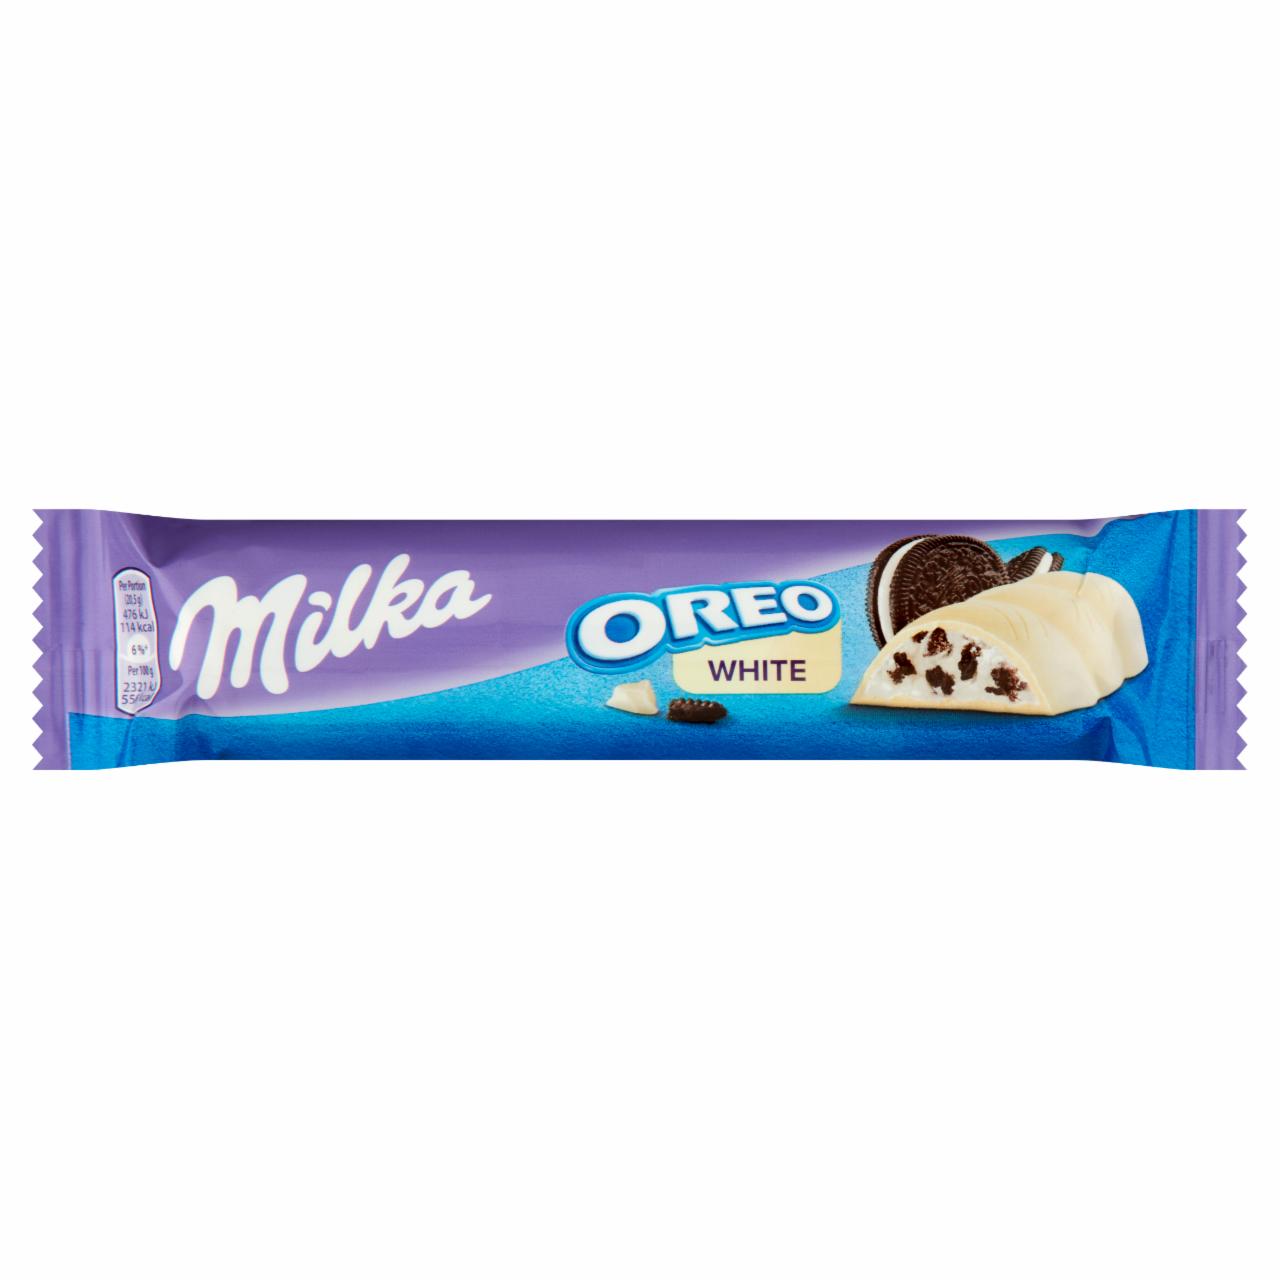 Képek - Milka Oreo White fehér csokoládé kakaós kekszdarabokkal és vaníliaízű tejes krémtöltelékkel